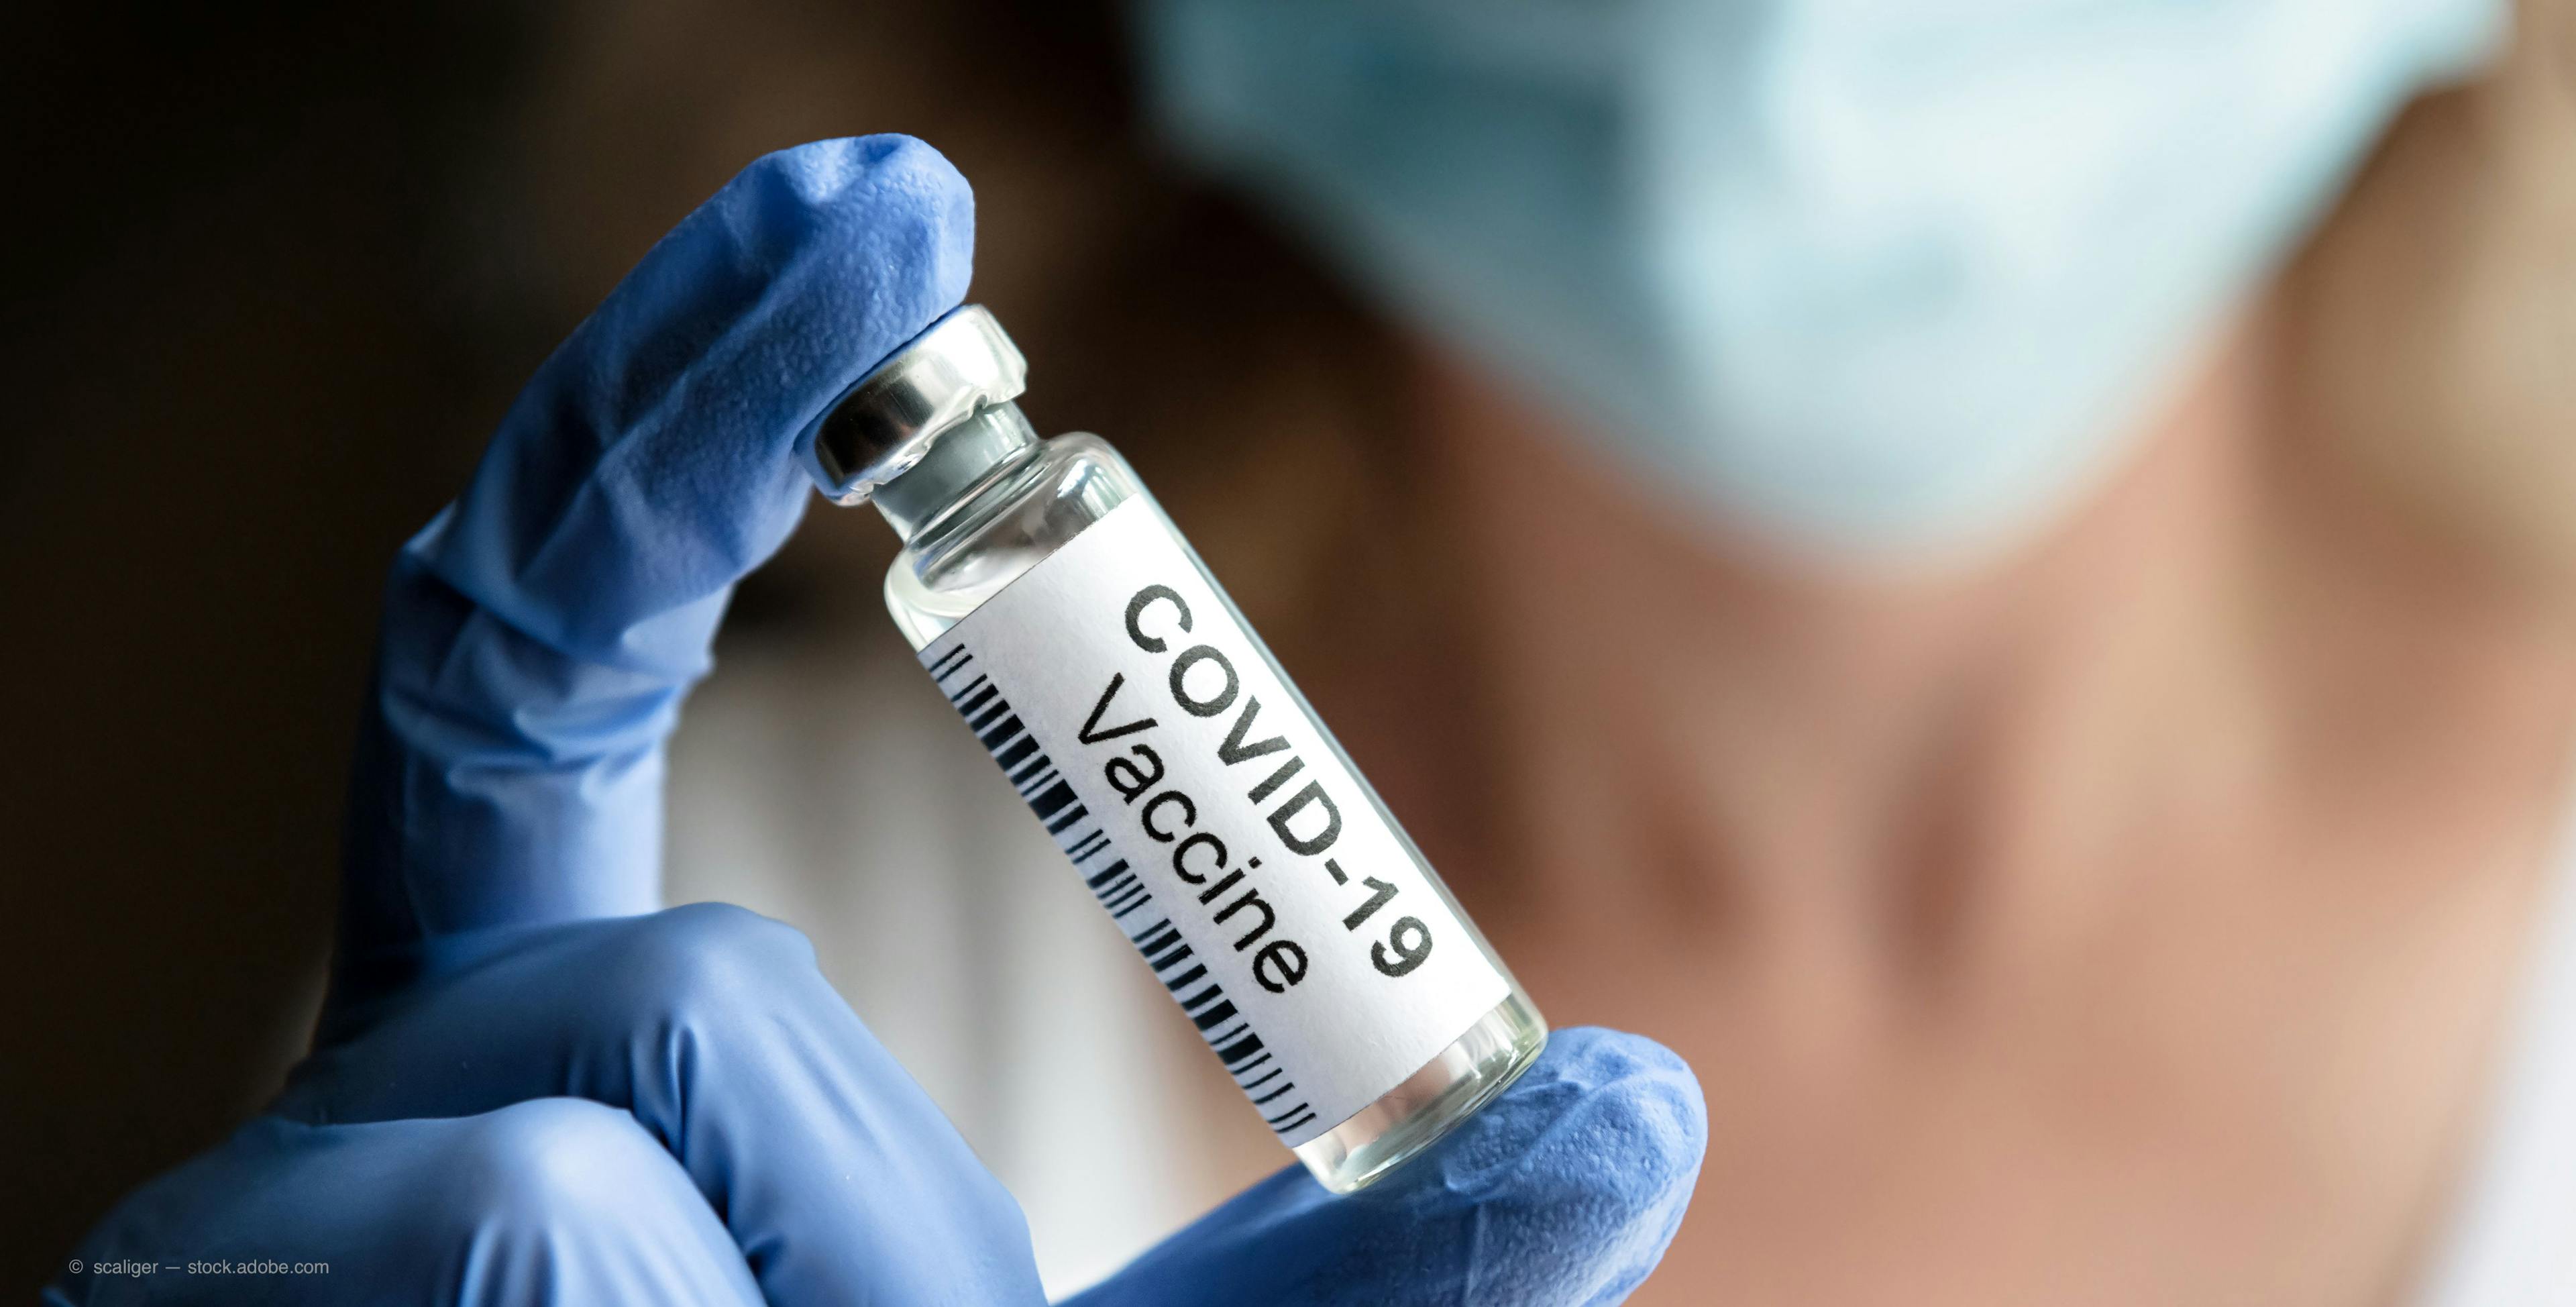 COVID-19 vaccination inequities in Massachusetts 